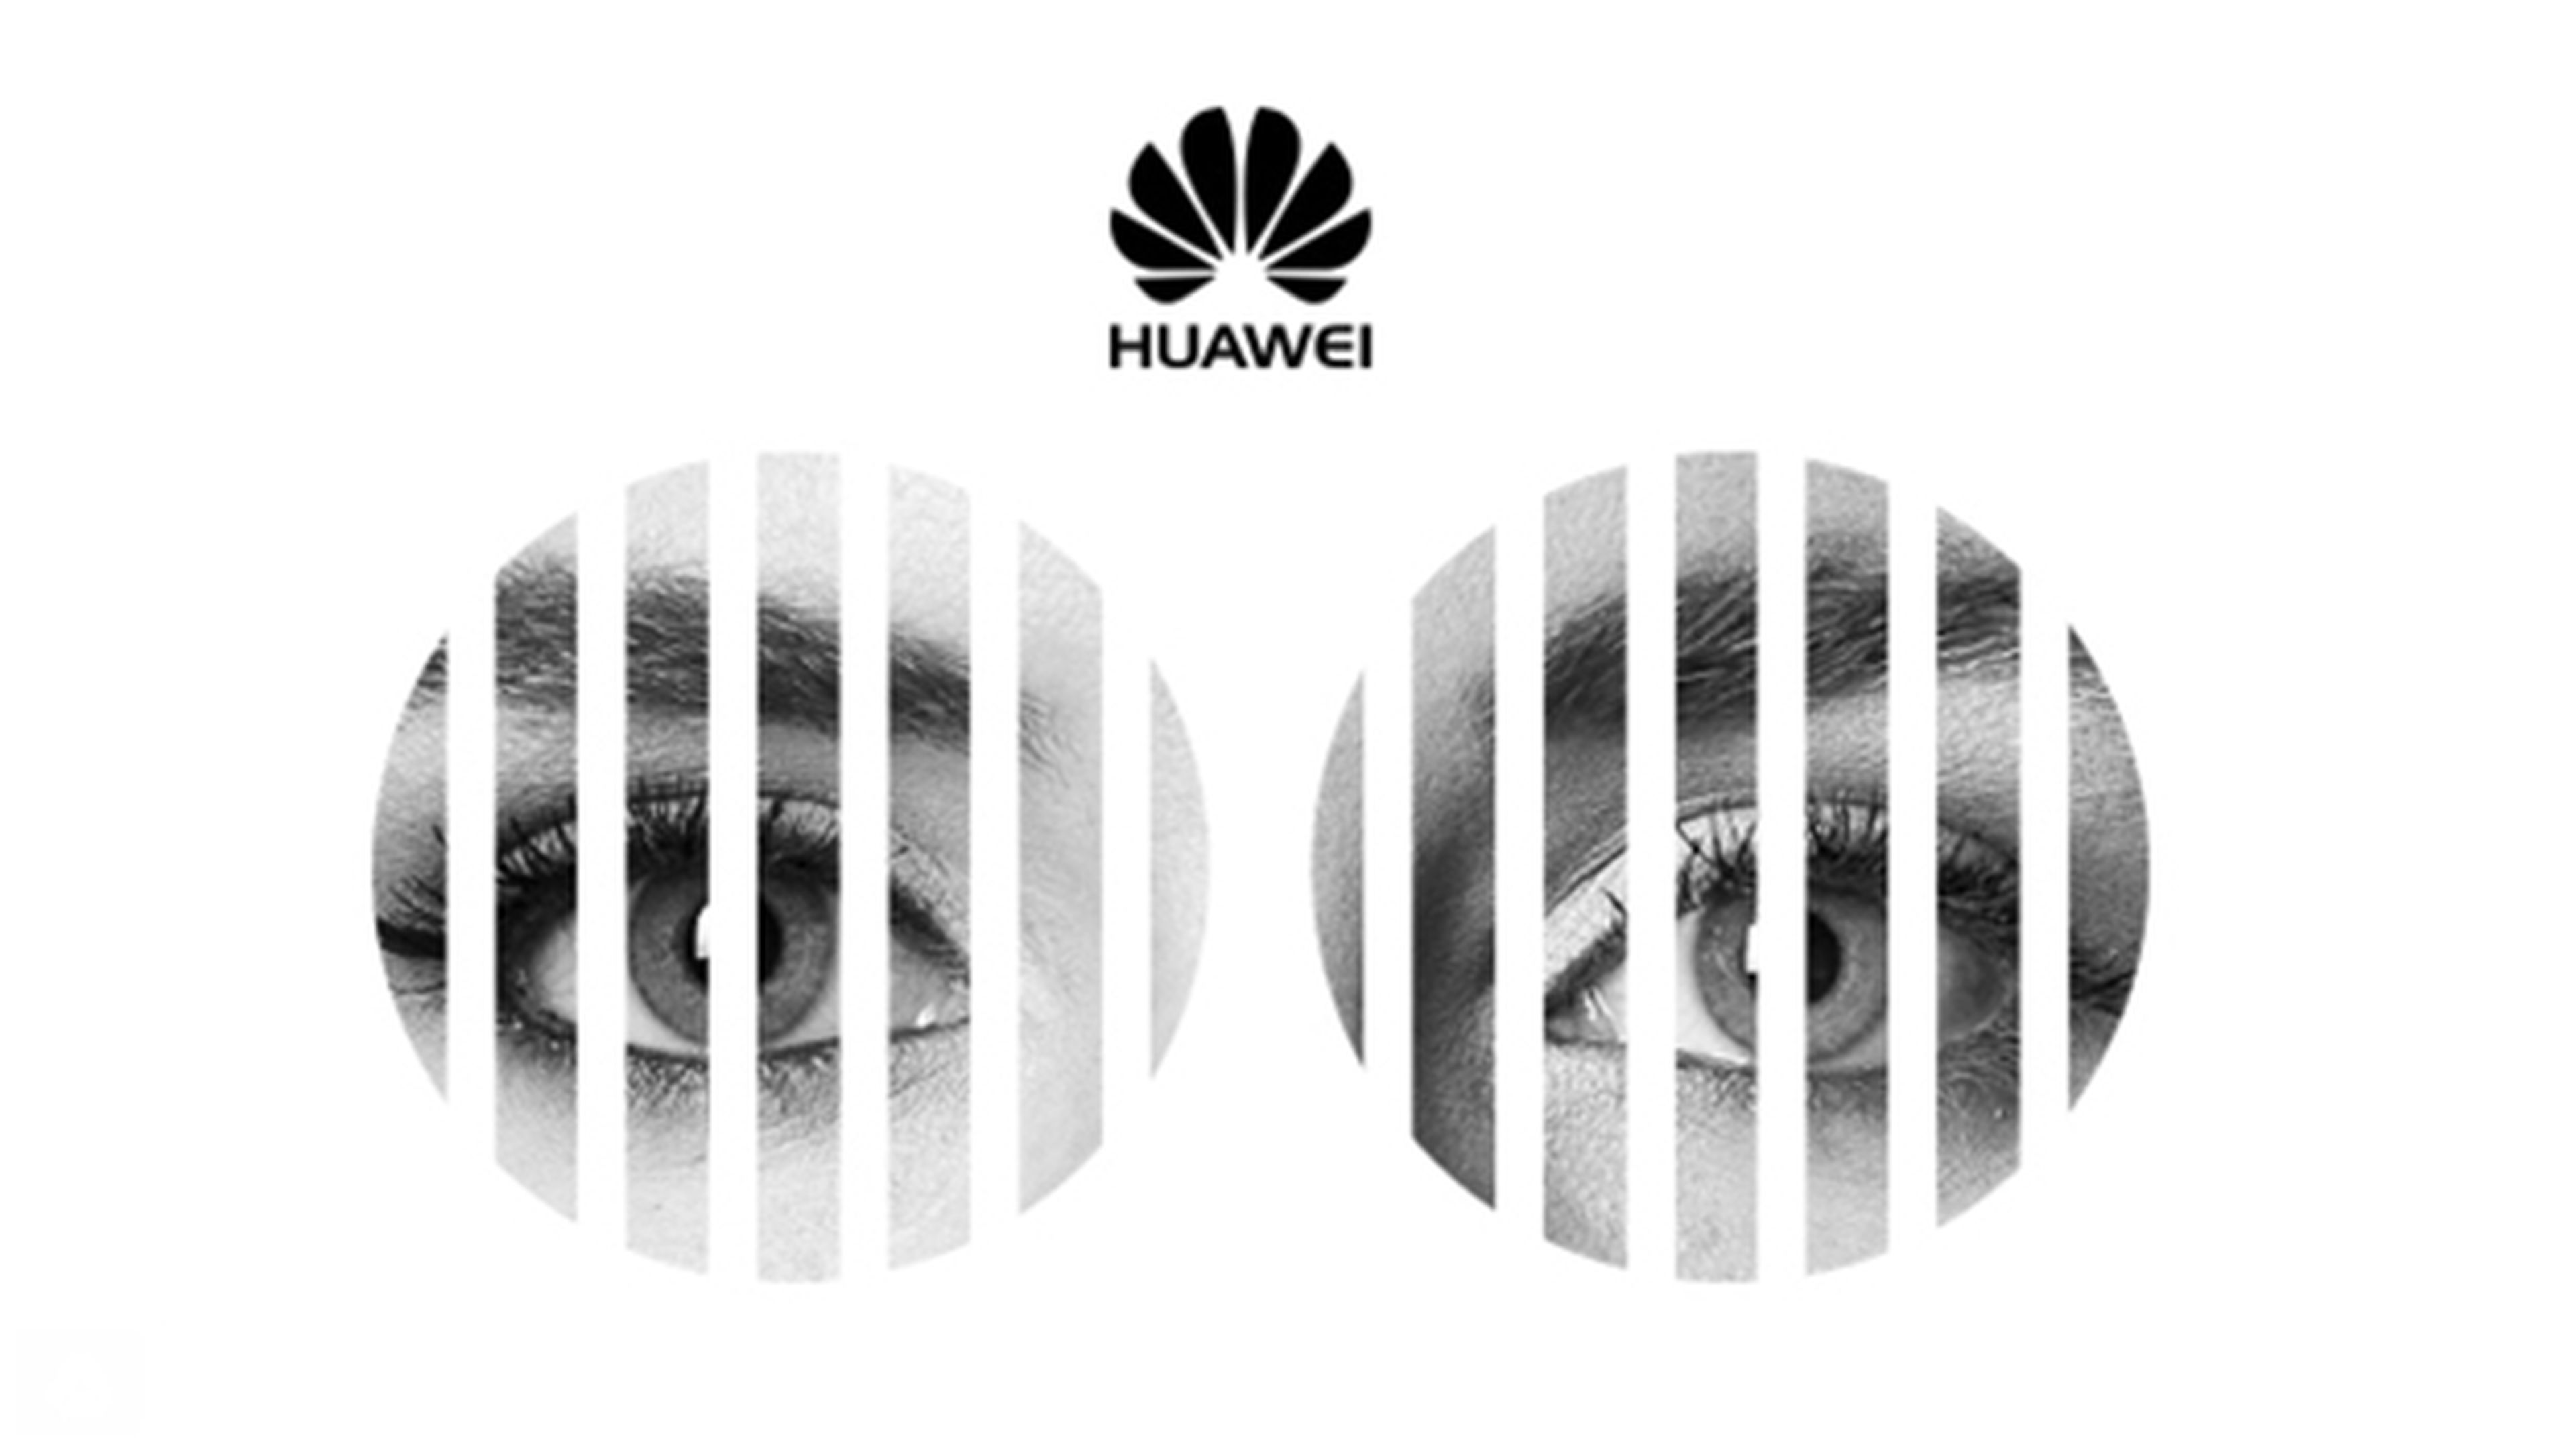 Cómo ver online y en directo la presentación del Huawei P10 en el MWC 2017